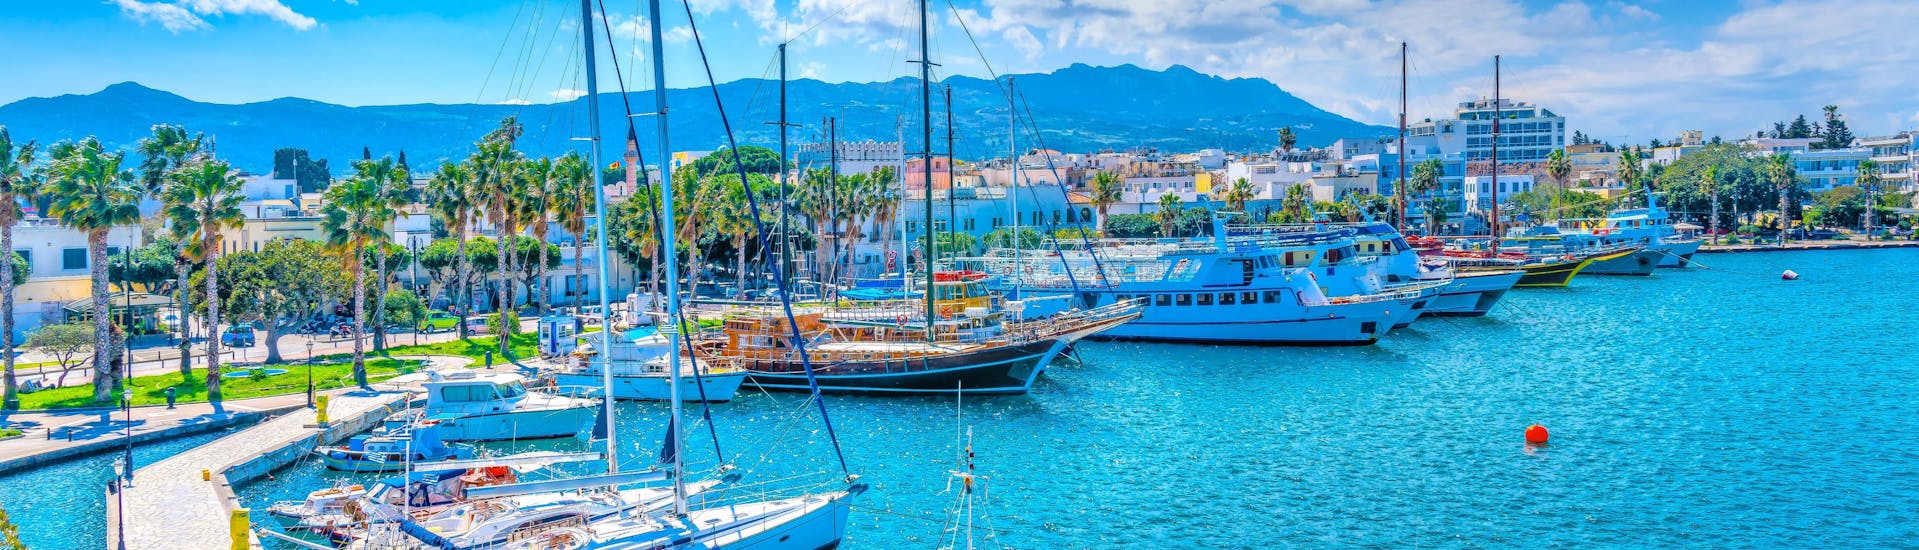 Imagen del puerto de Kos, Grecia, un destino popular para los viajes en barco.